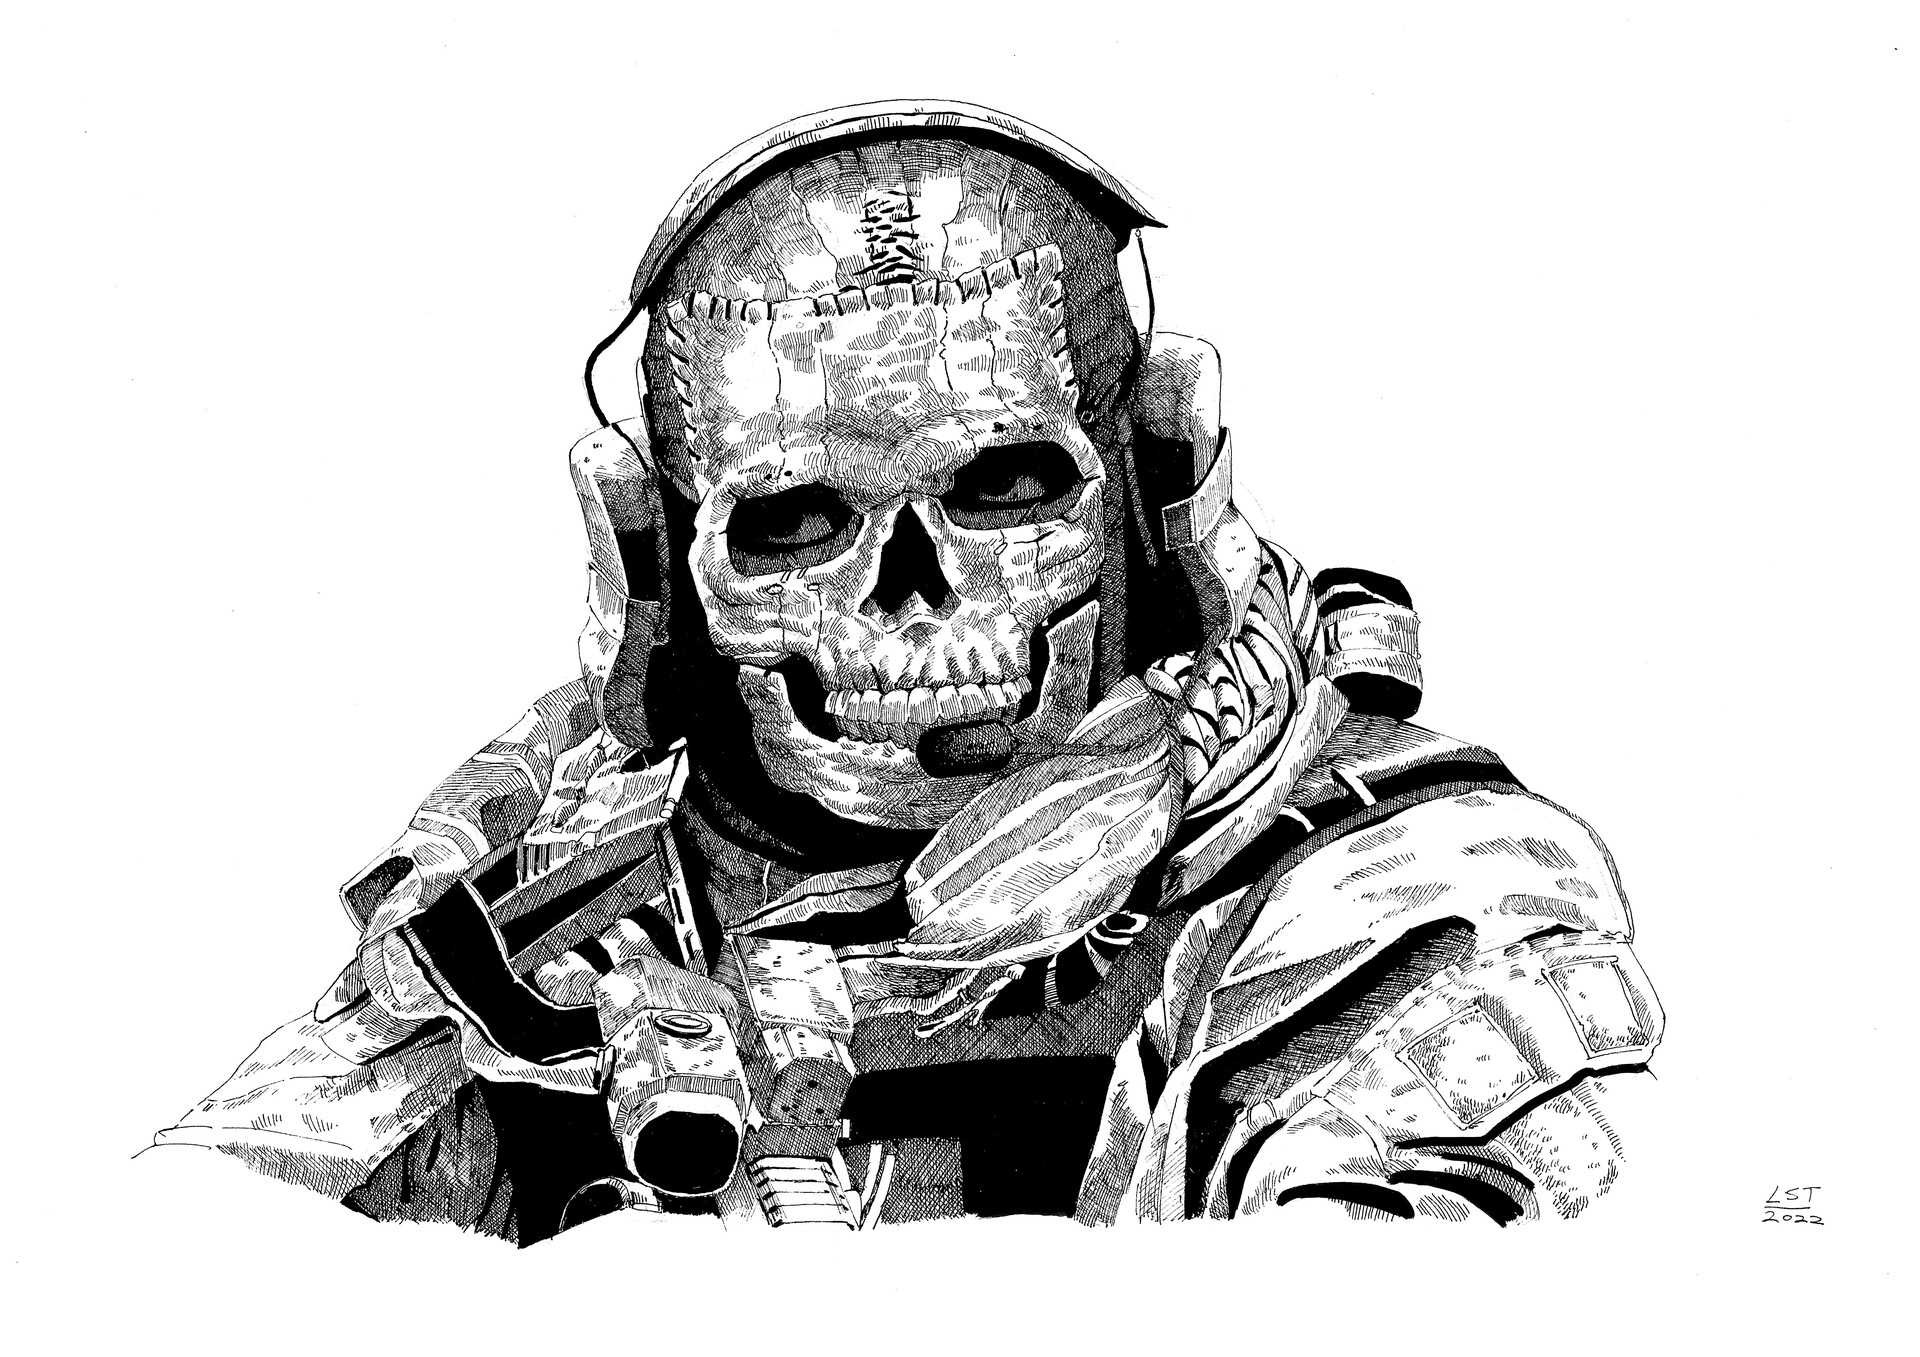 Modern Warfare 2 - Ghost  Call of duty, Modern warfare, Warfare